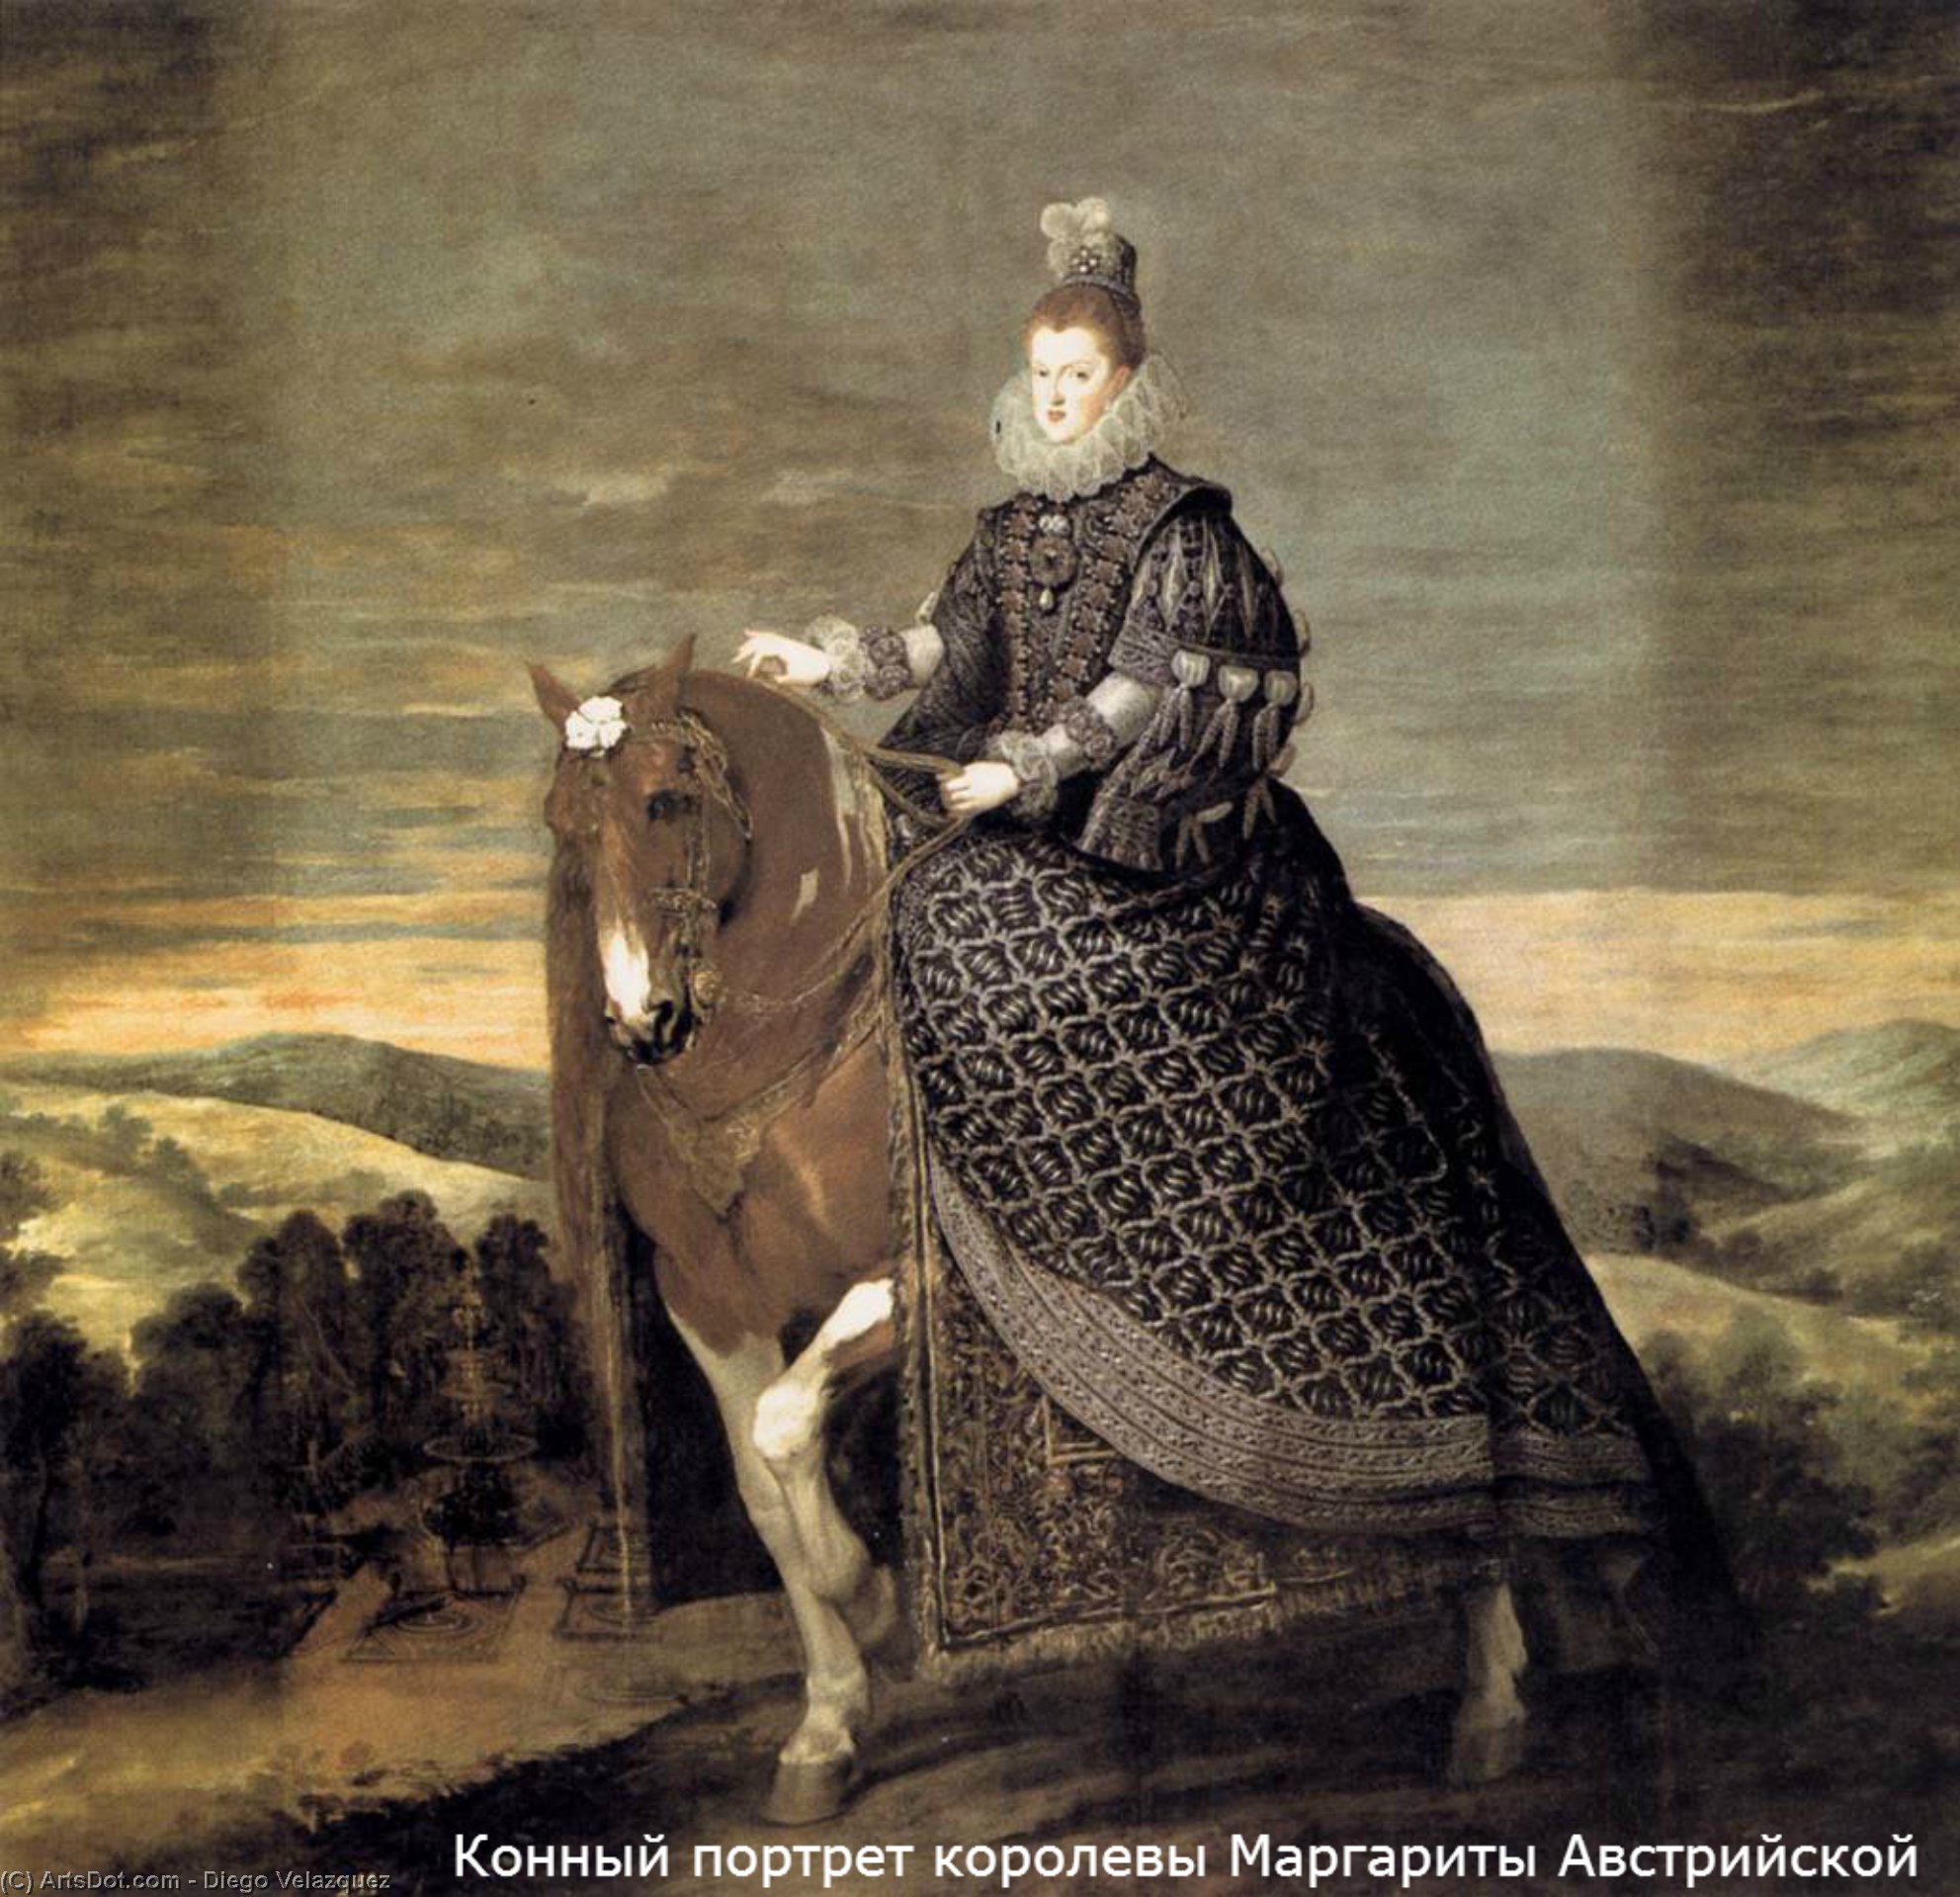 Wikoo.org - موسوعة الفنون الجميلة - اللوحة، العمل الفني Diego Velazquez - Portrait of Queen Margaret of Austria